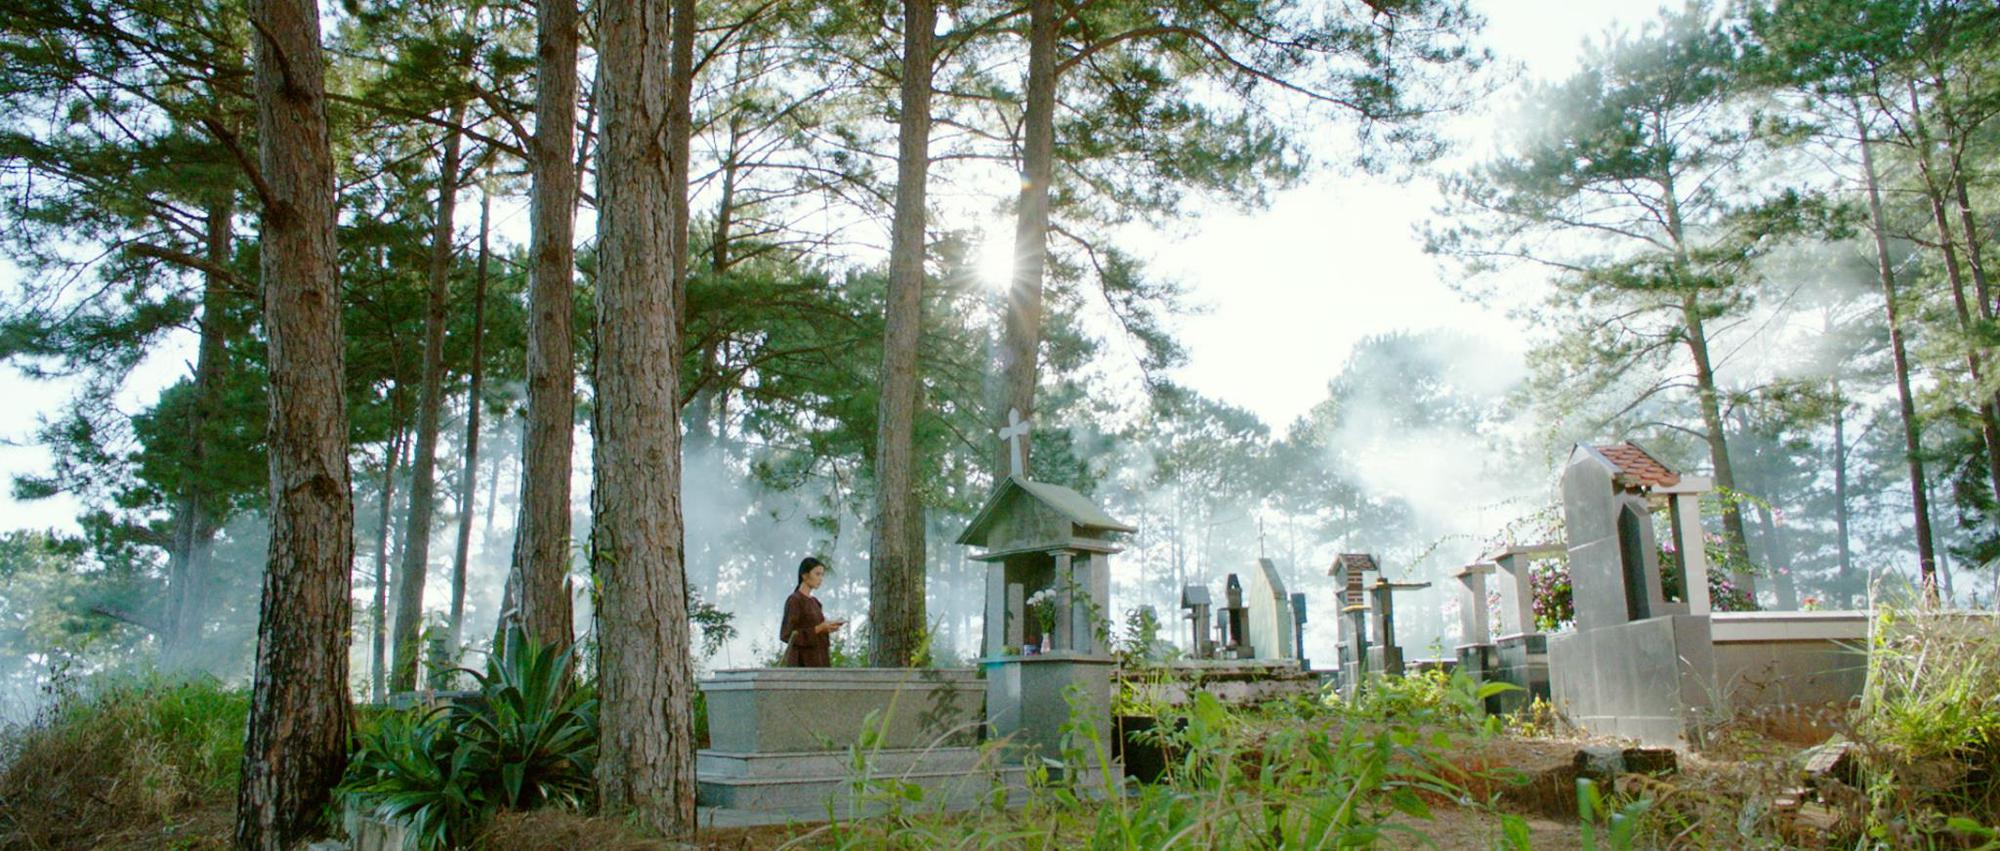 Đạo diễn “Kẻ Đào Mồ”: “Chọn bối cảnh nghĩa trang, tôi xác định đối mặt với chuyện tâm linh khó lý giải” - ảnh 2